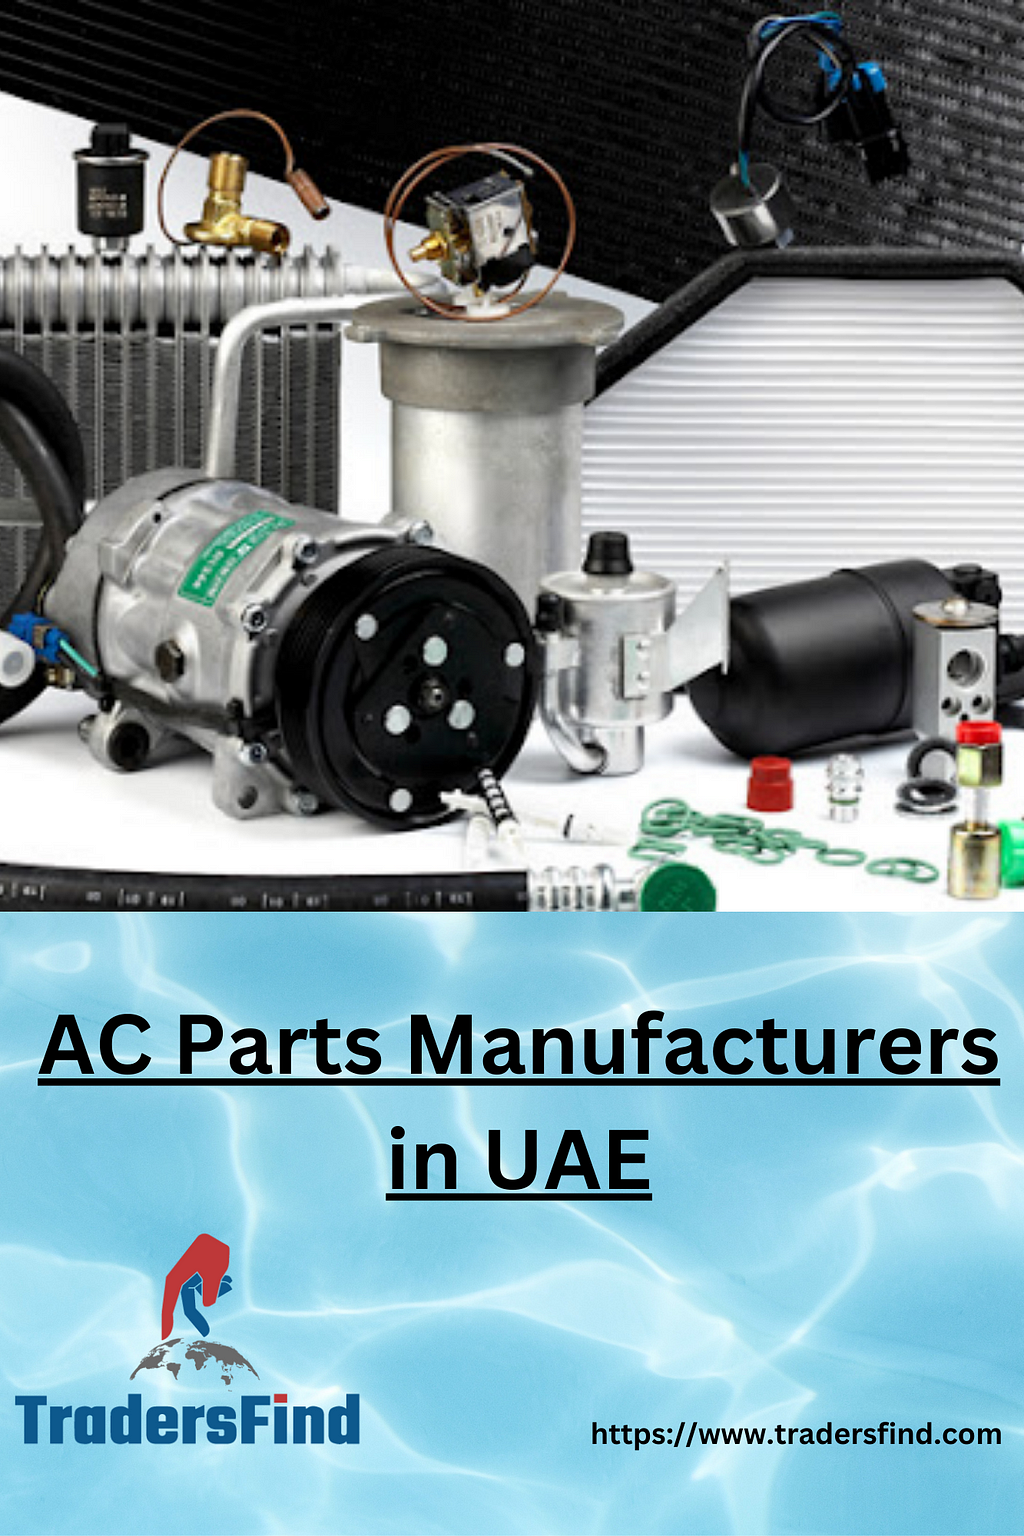 AC Parts manufacturers in UAE